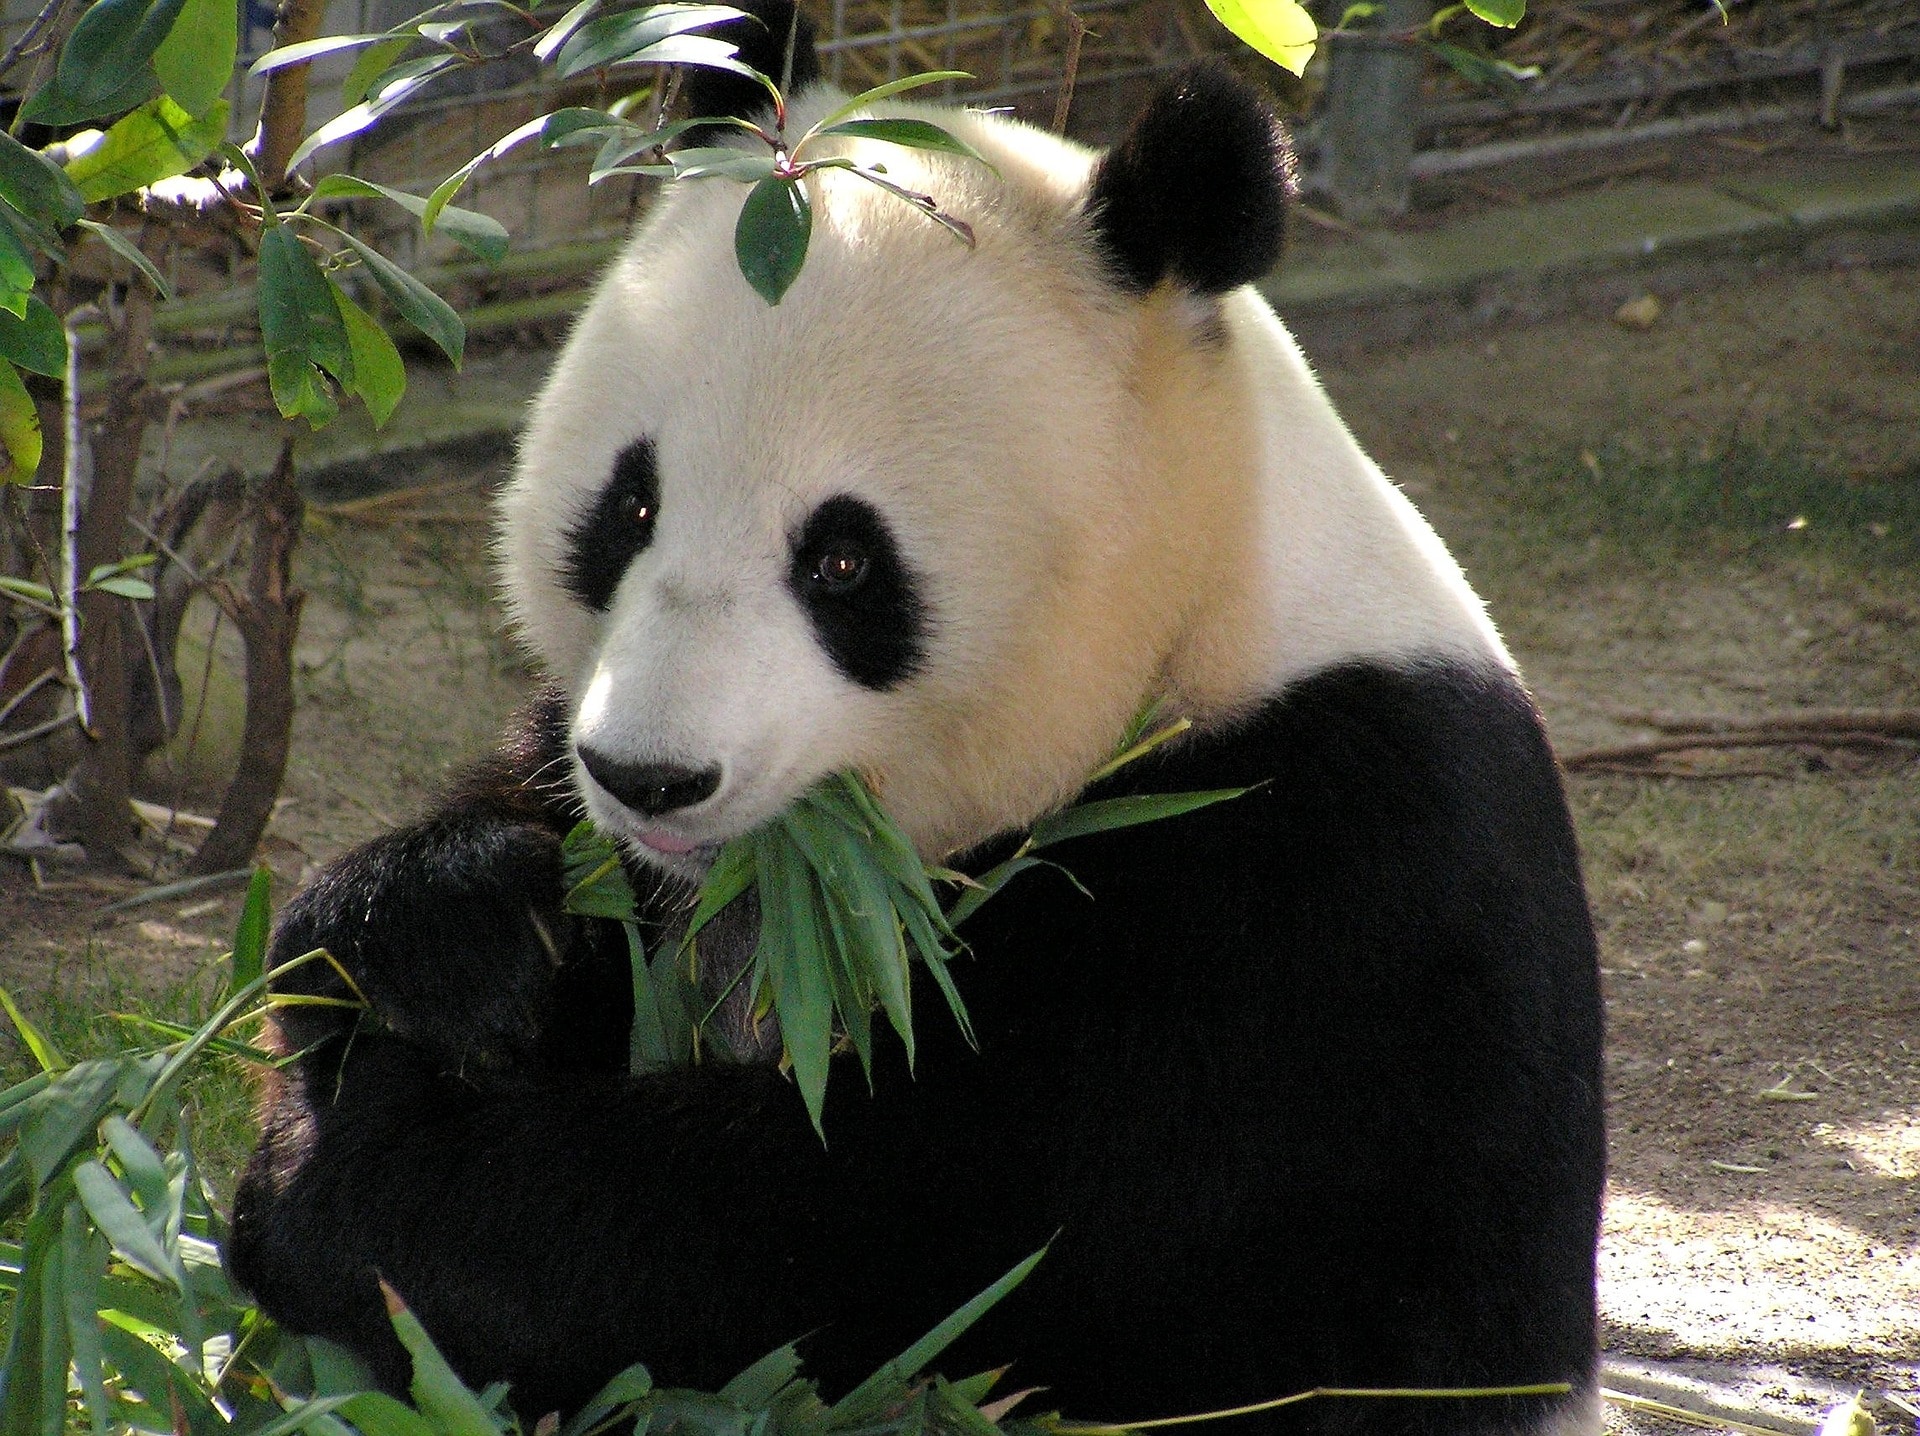 panda geant, animal symbole, mammifere carnivore de chine